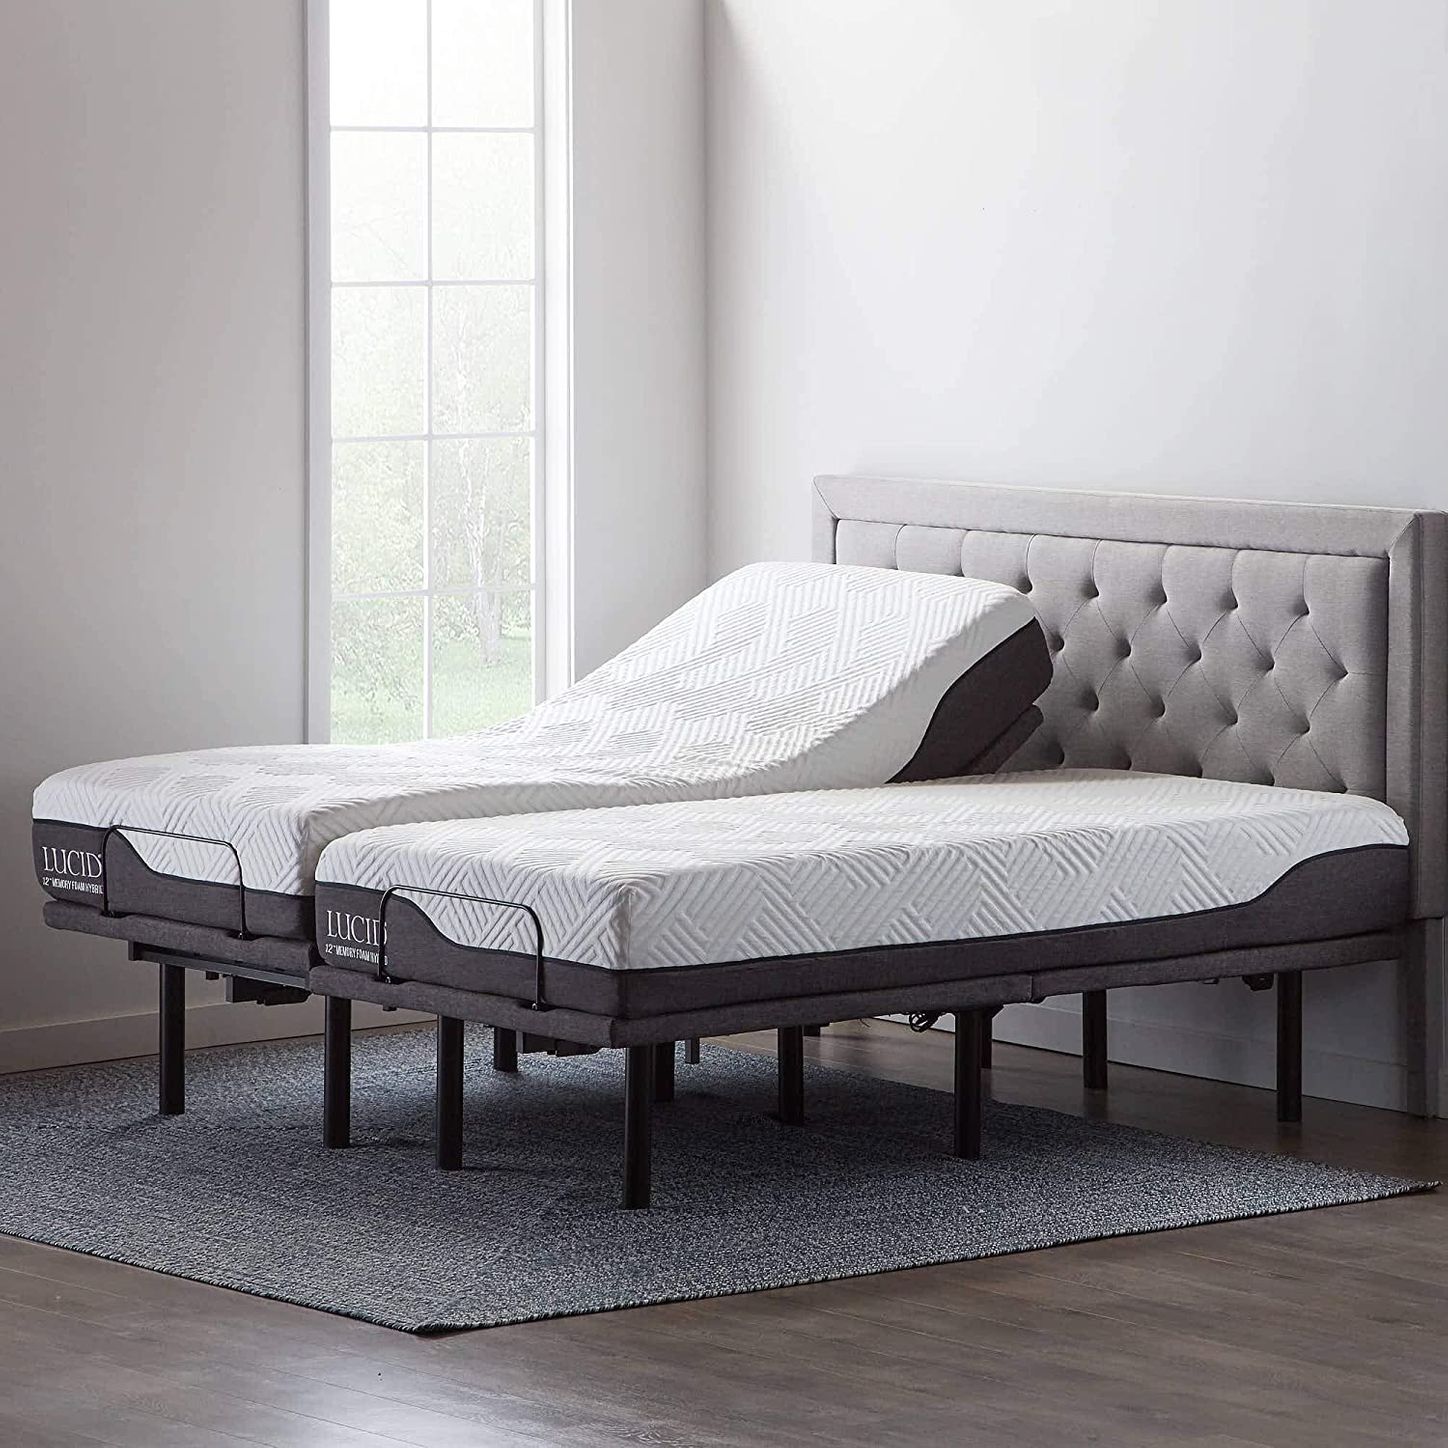 10 Best Adjustable Bed Bases 2022 The, Best Split King Adjustable Bed 2020